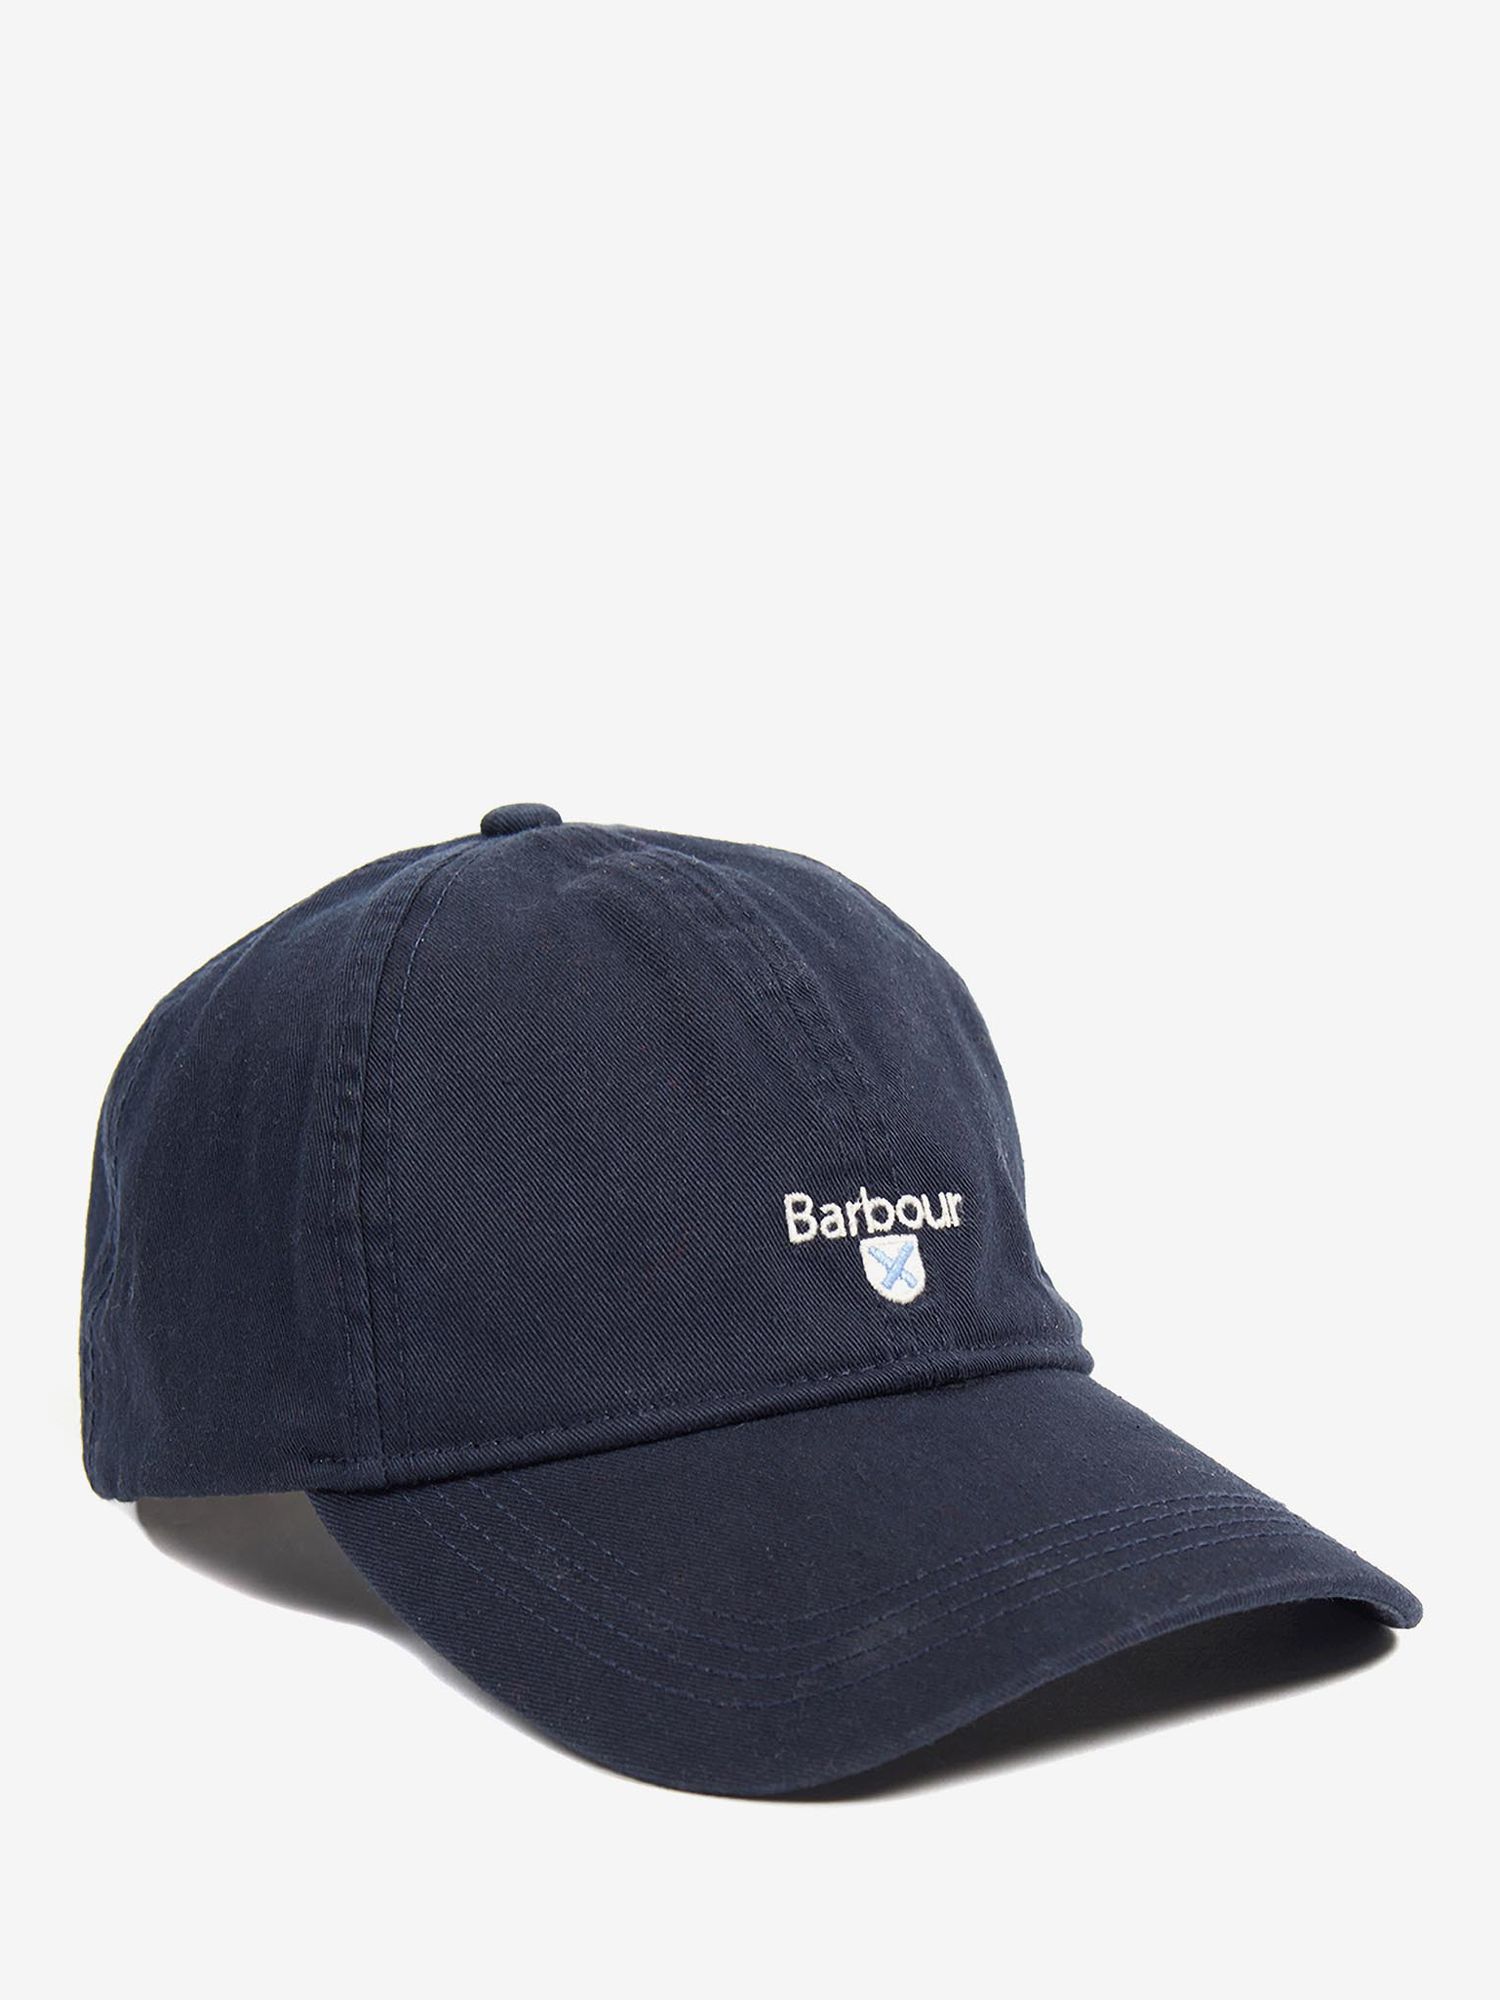 barbour baseball cap